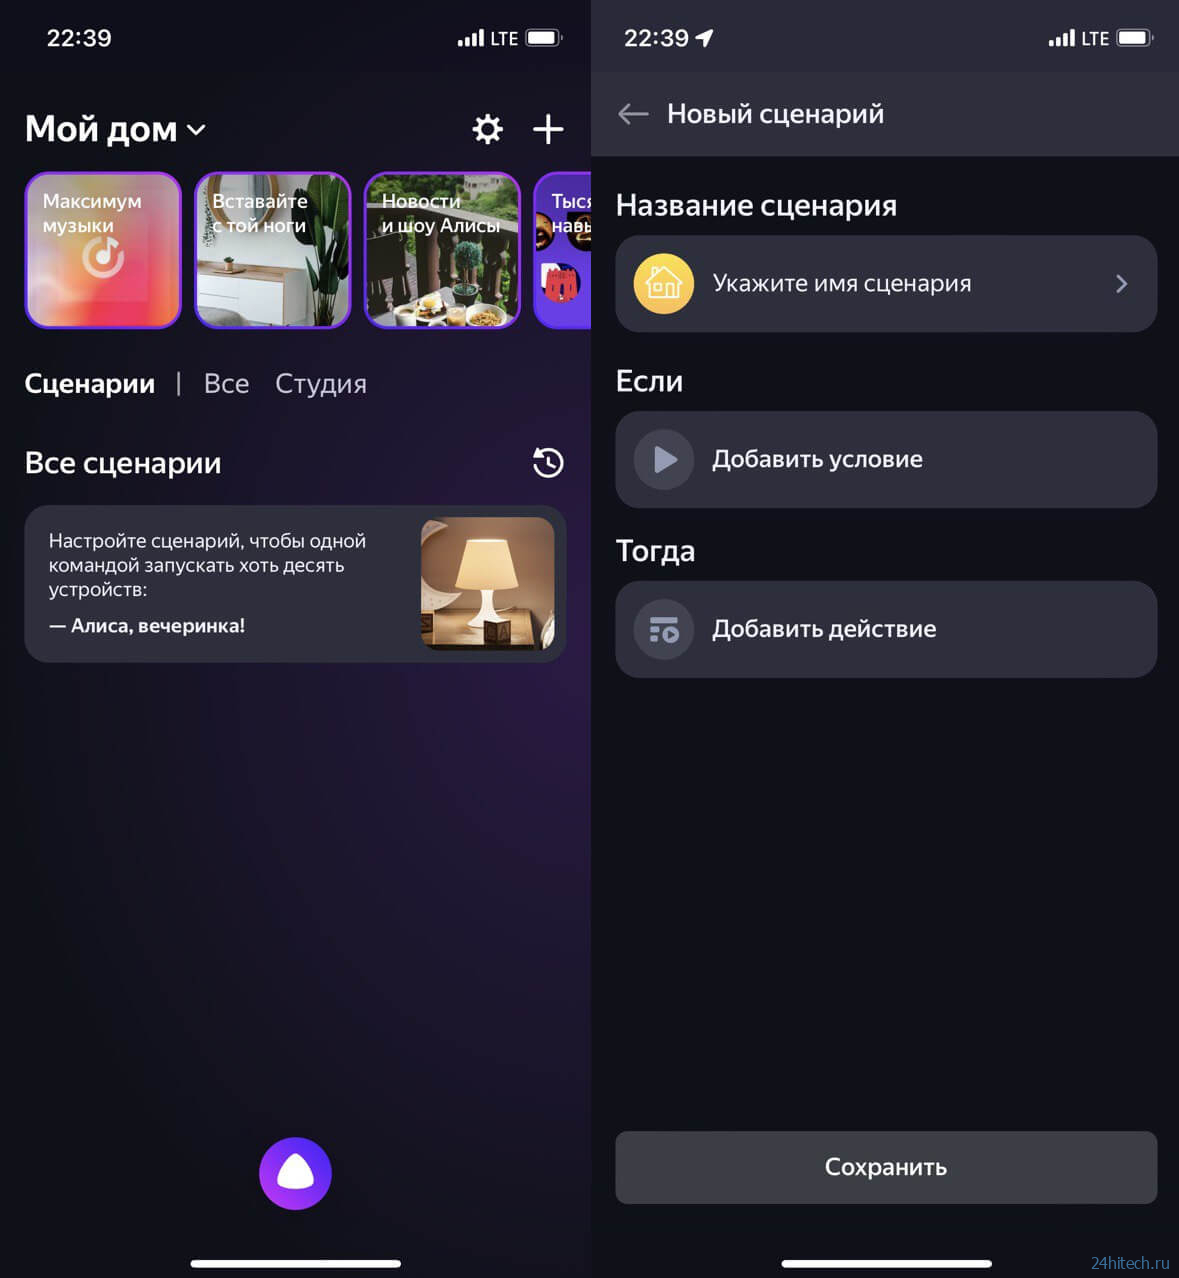 Яндекс выпустила отдельное приложение для управления умным домом с Алисой